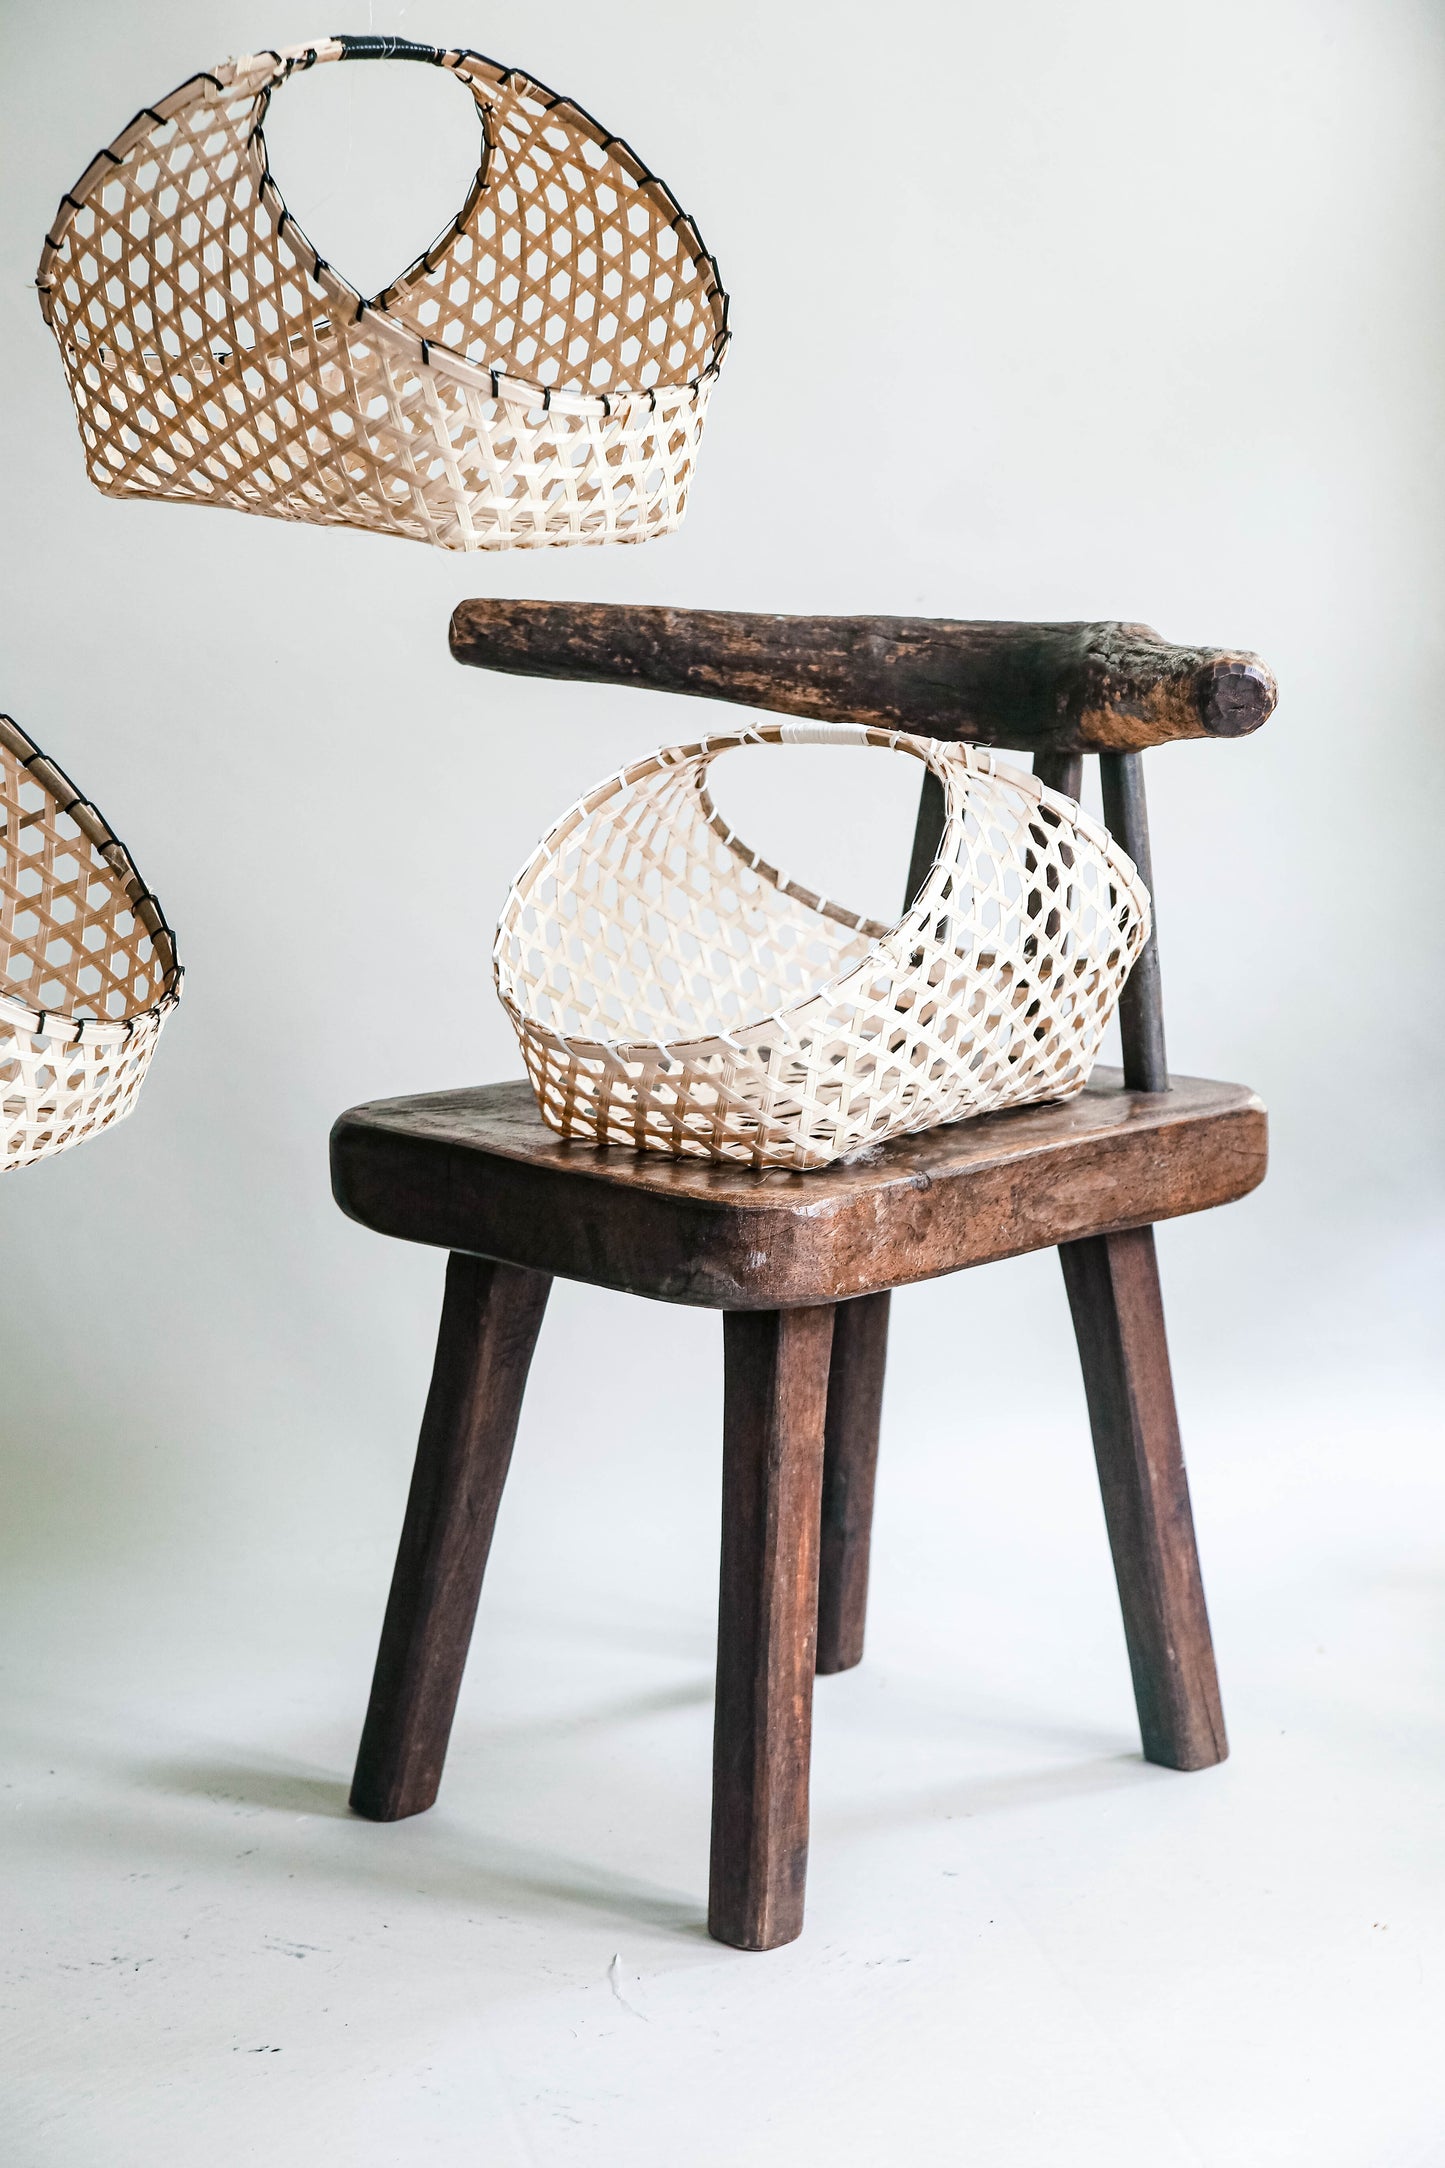 Regalo: Reusable Bamboo Basket Gift Wrap